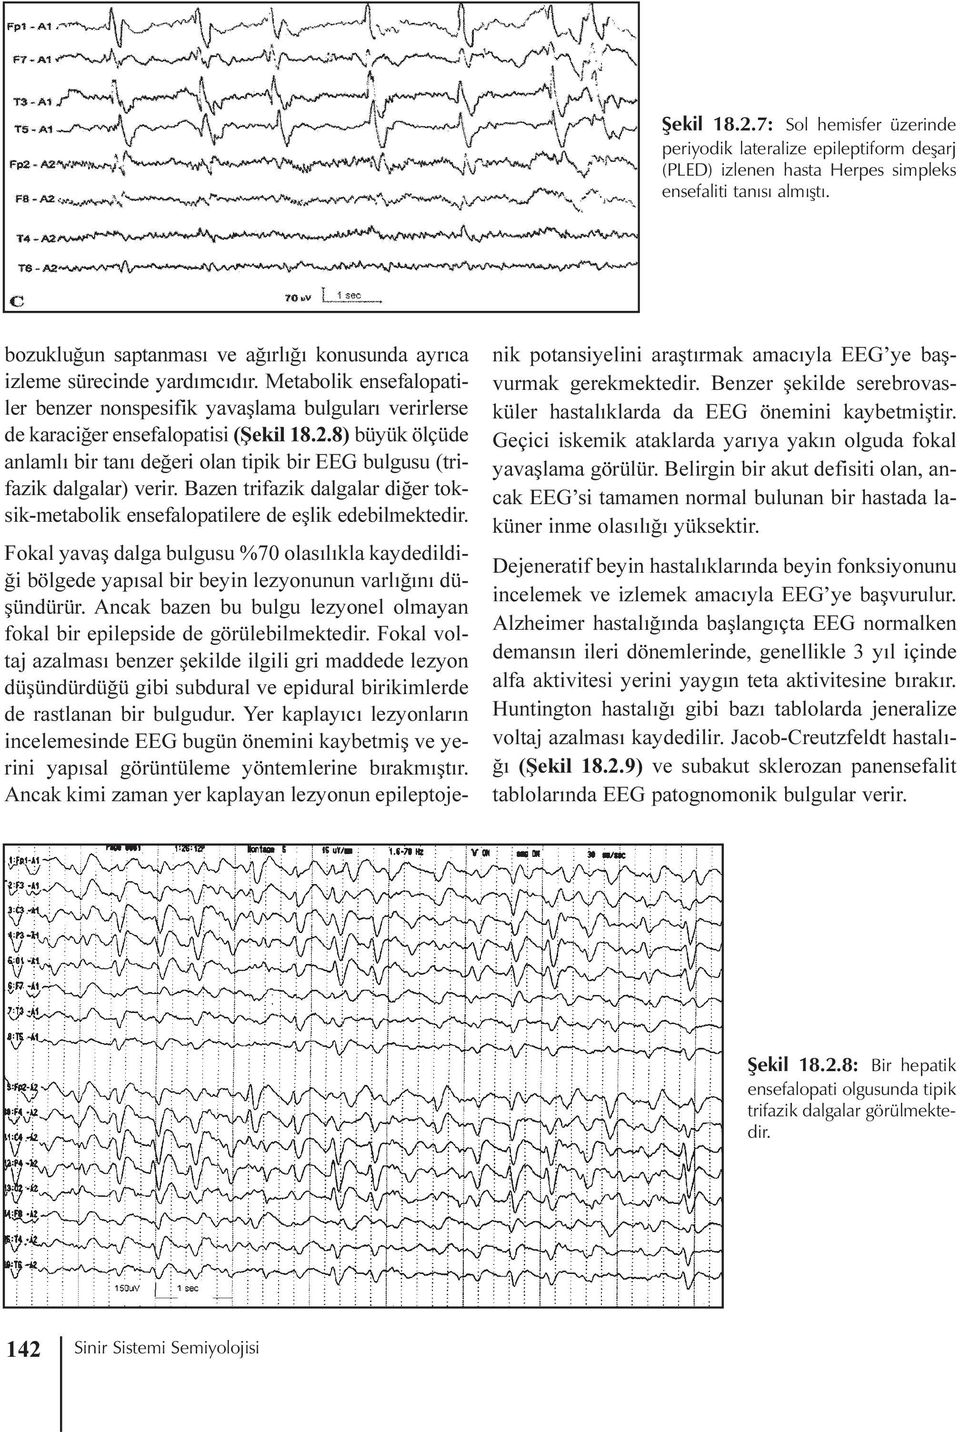 8) büyük ölçüde anlamlý bir taný deðeri olan tipik bir EEG bulgusu (trifazik dalgalar) verir. Bazen trifazik dalgalar diðer toksik-metabolik ensefalopatilere de eþlik edebilmektedir.